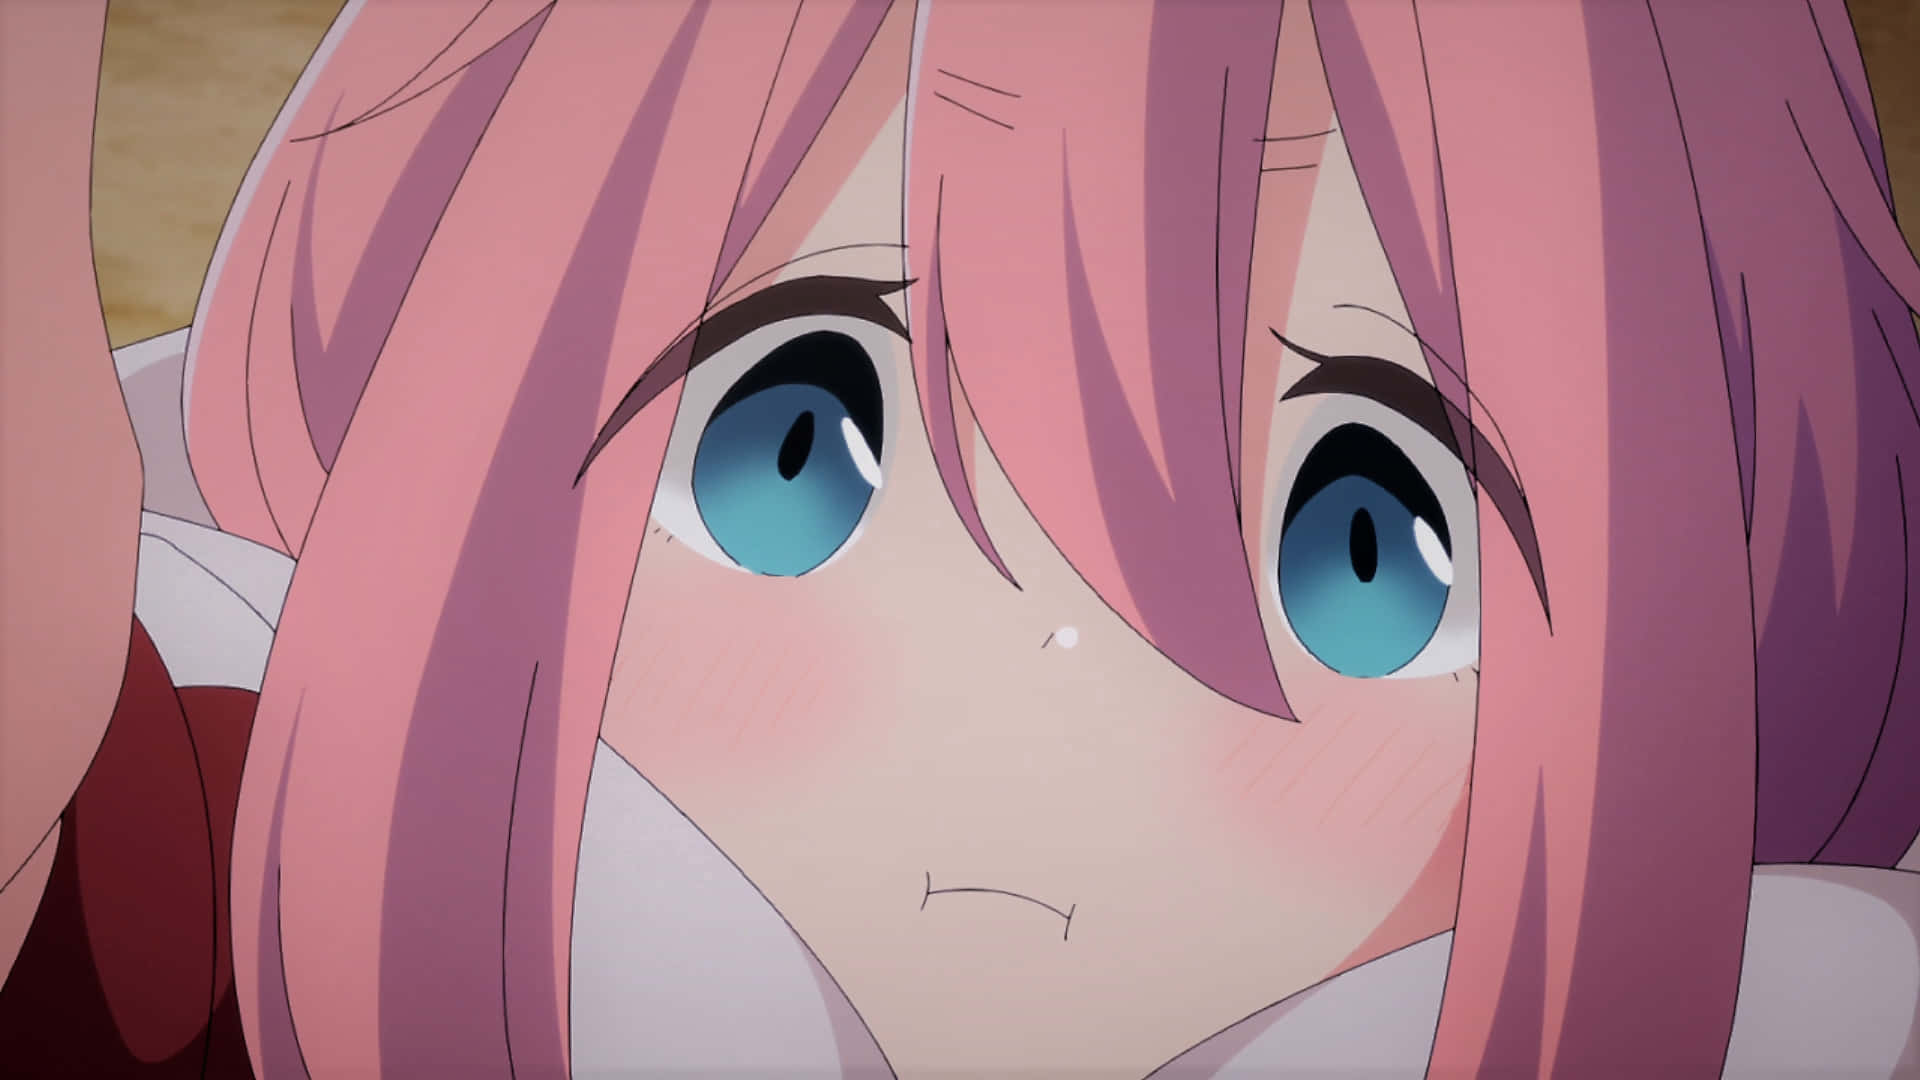 blushing face anime